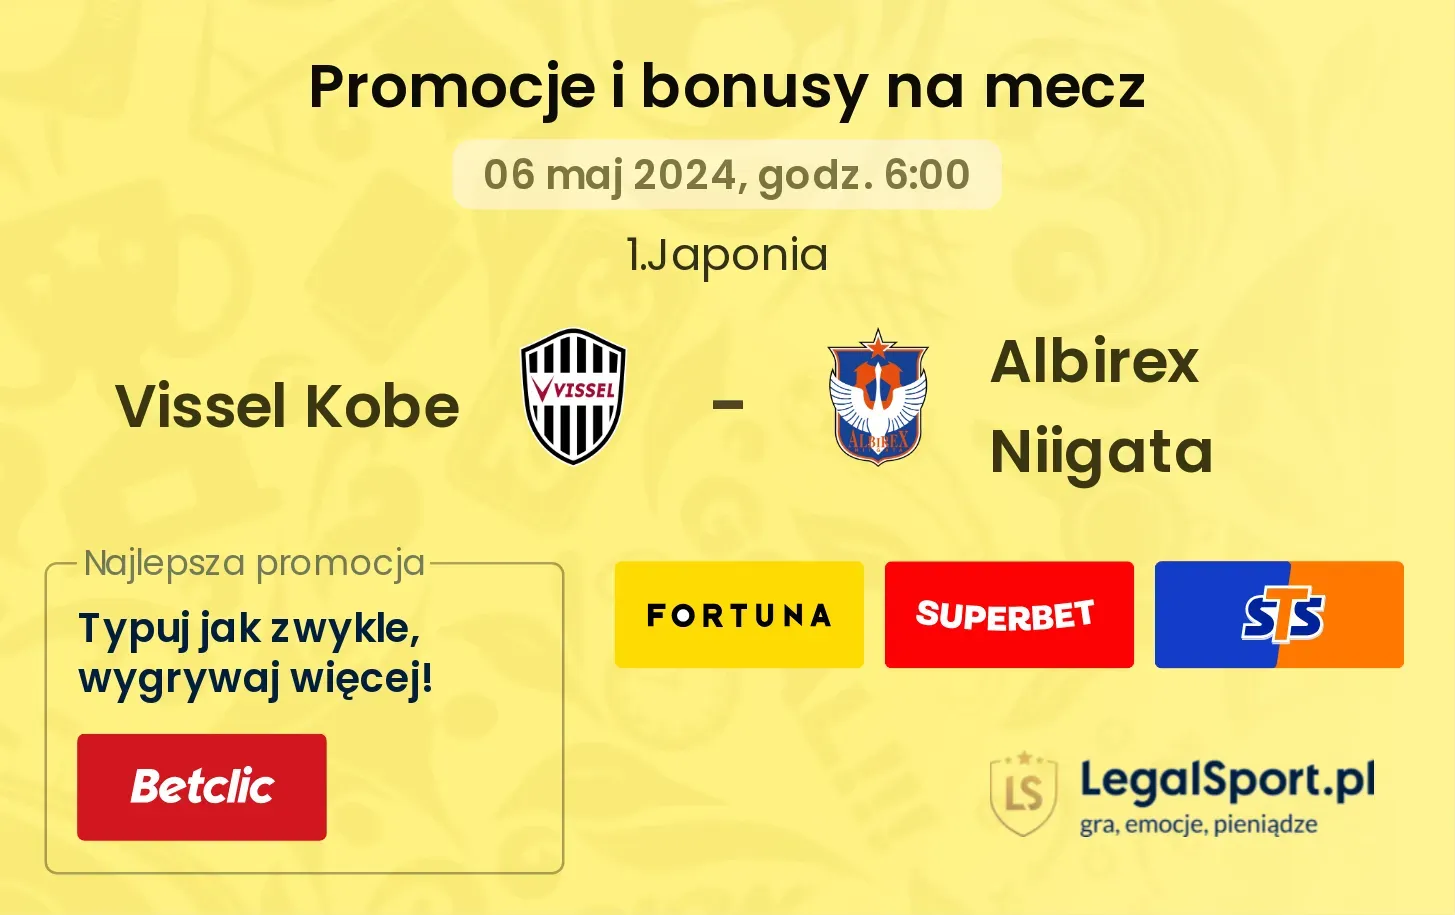 Vissel Kobe - Albirex Niigata promocje bonusy na mecz